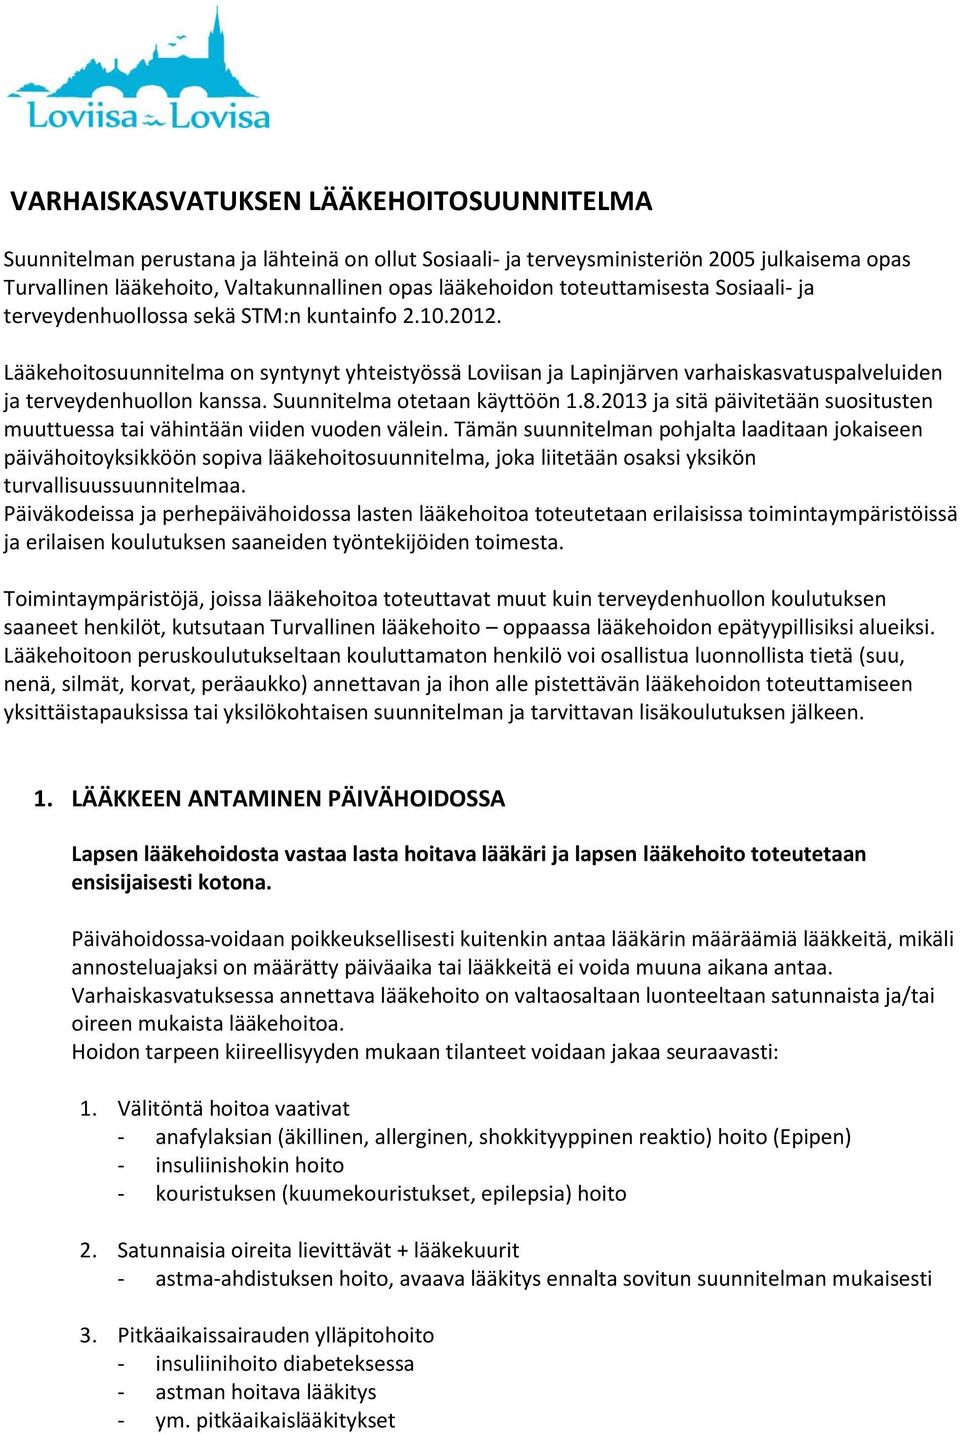 Lääkehoitosuunnitelma on syntynyt yhteistyössä Loviisan ja Lapinjärven varhaiskasvatuspalveluiden ja terveydenhuollon kanssa. Suunnitelma otetaan käyttöön 1.8.